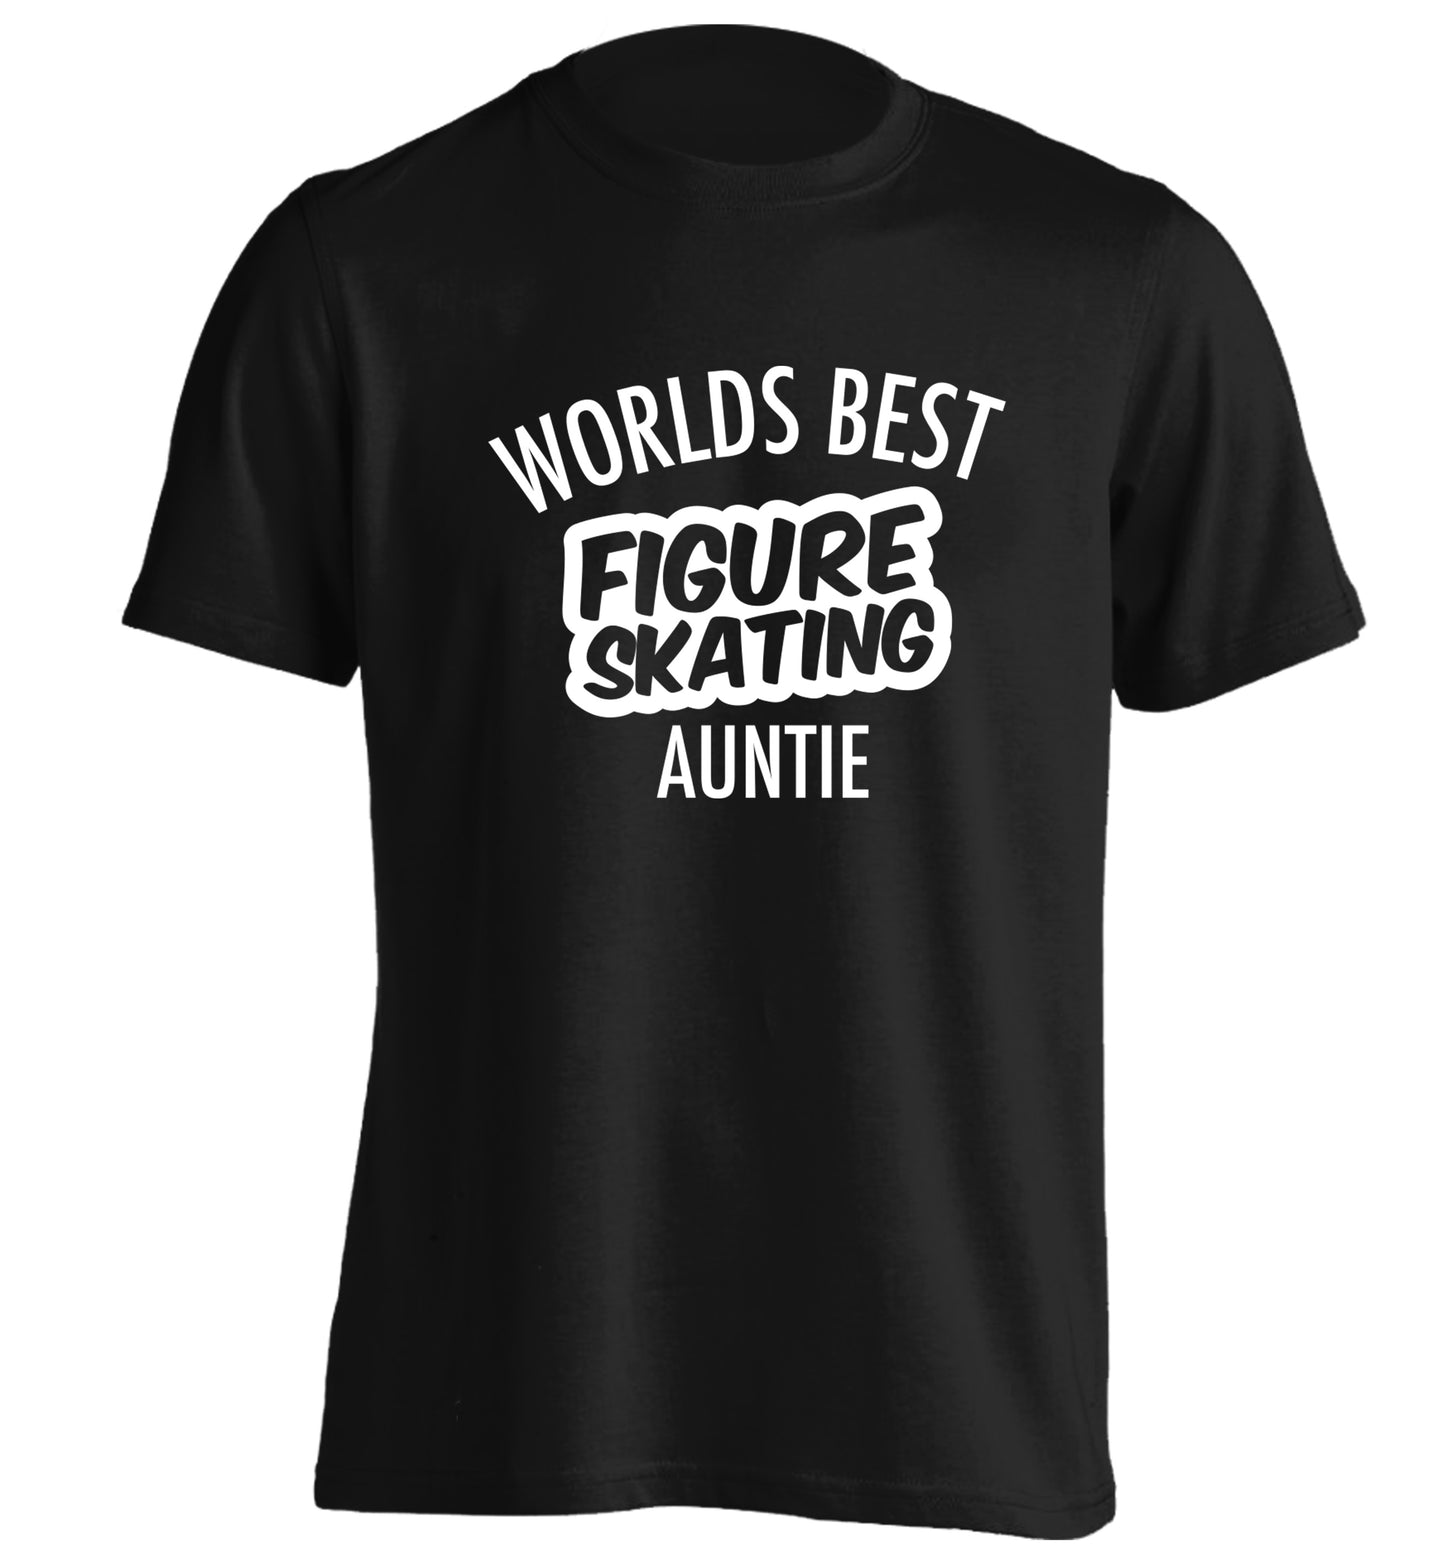 Worlds best figure skating auntie adults unisexblack Tshirt 2XL